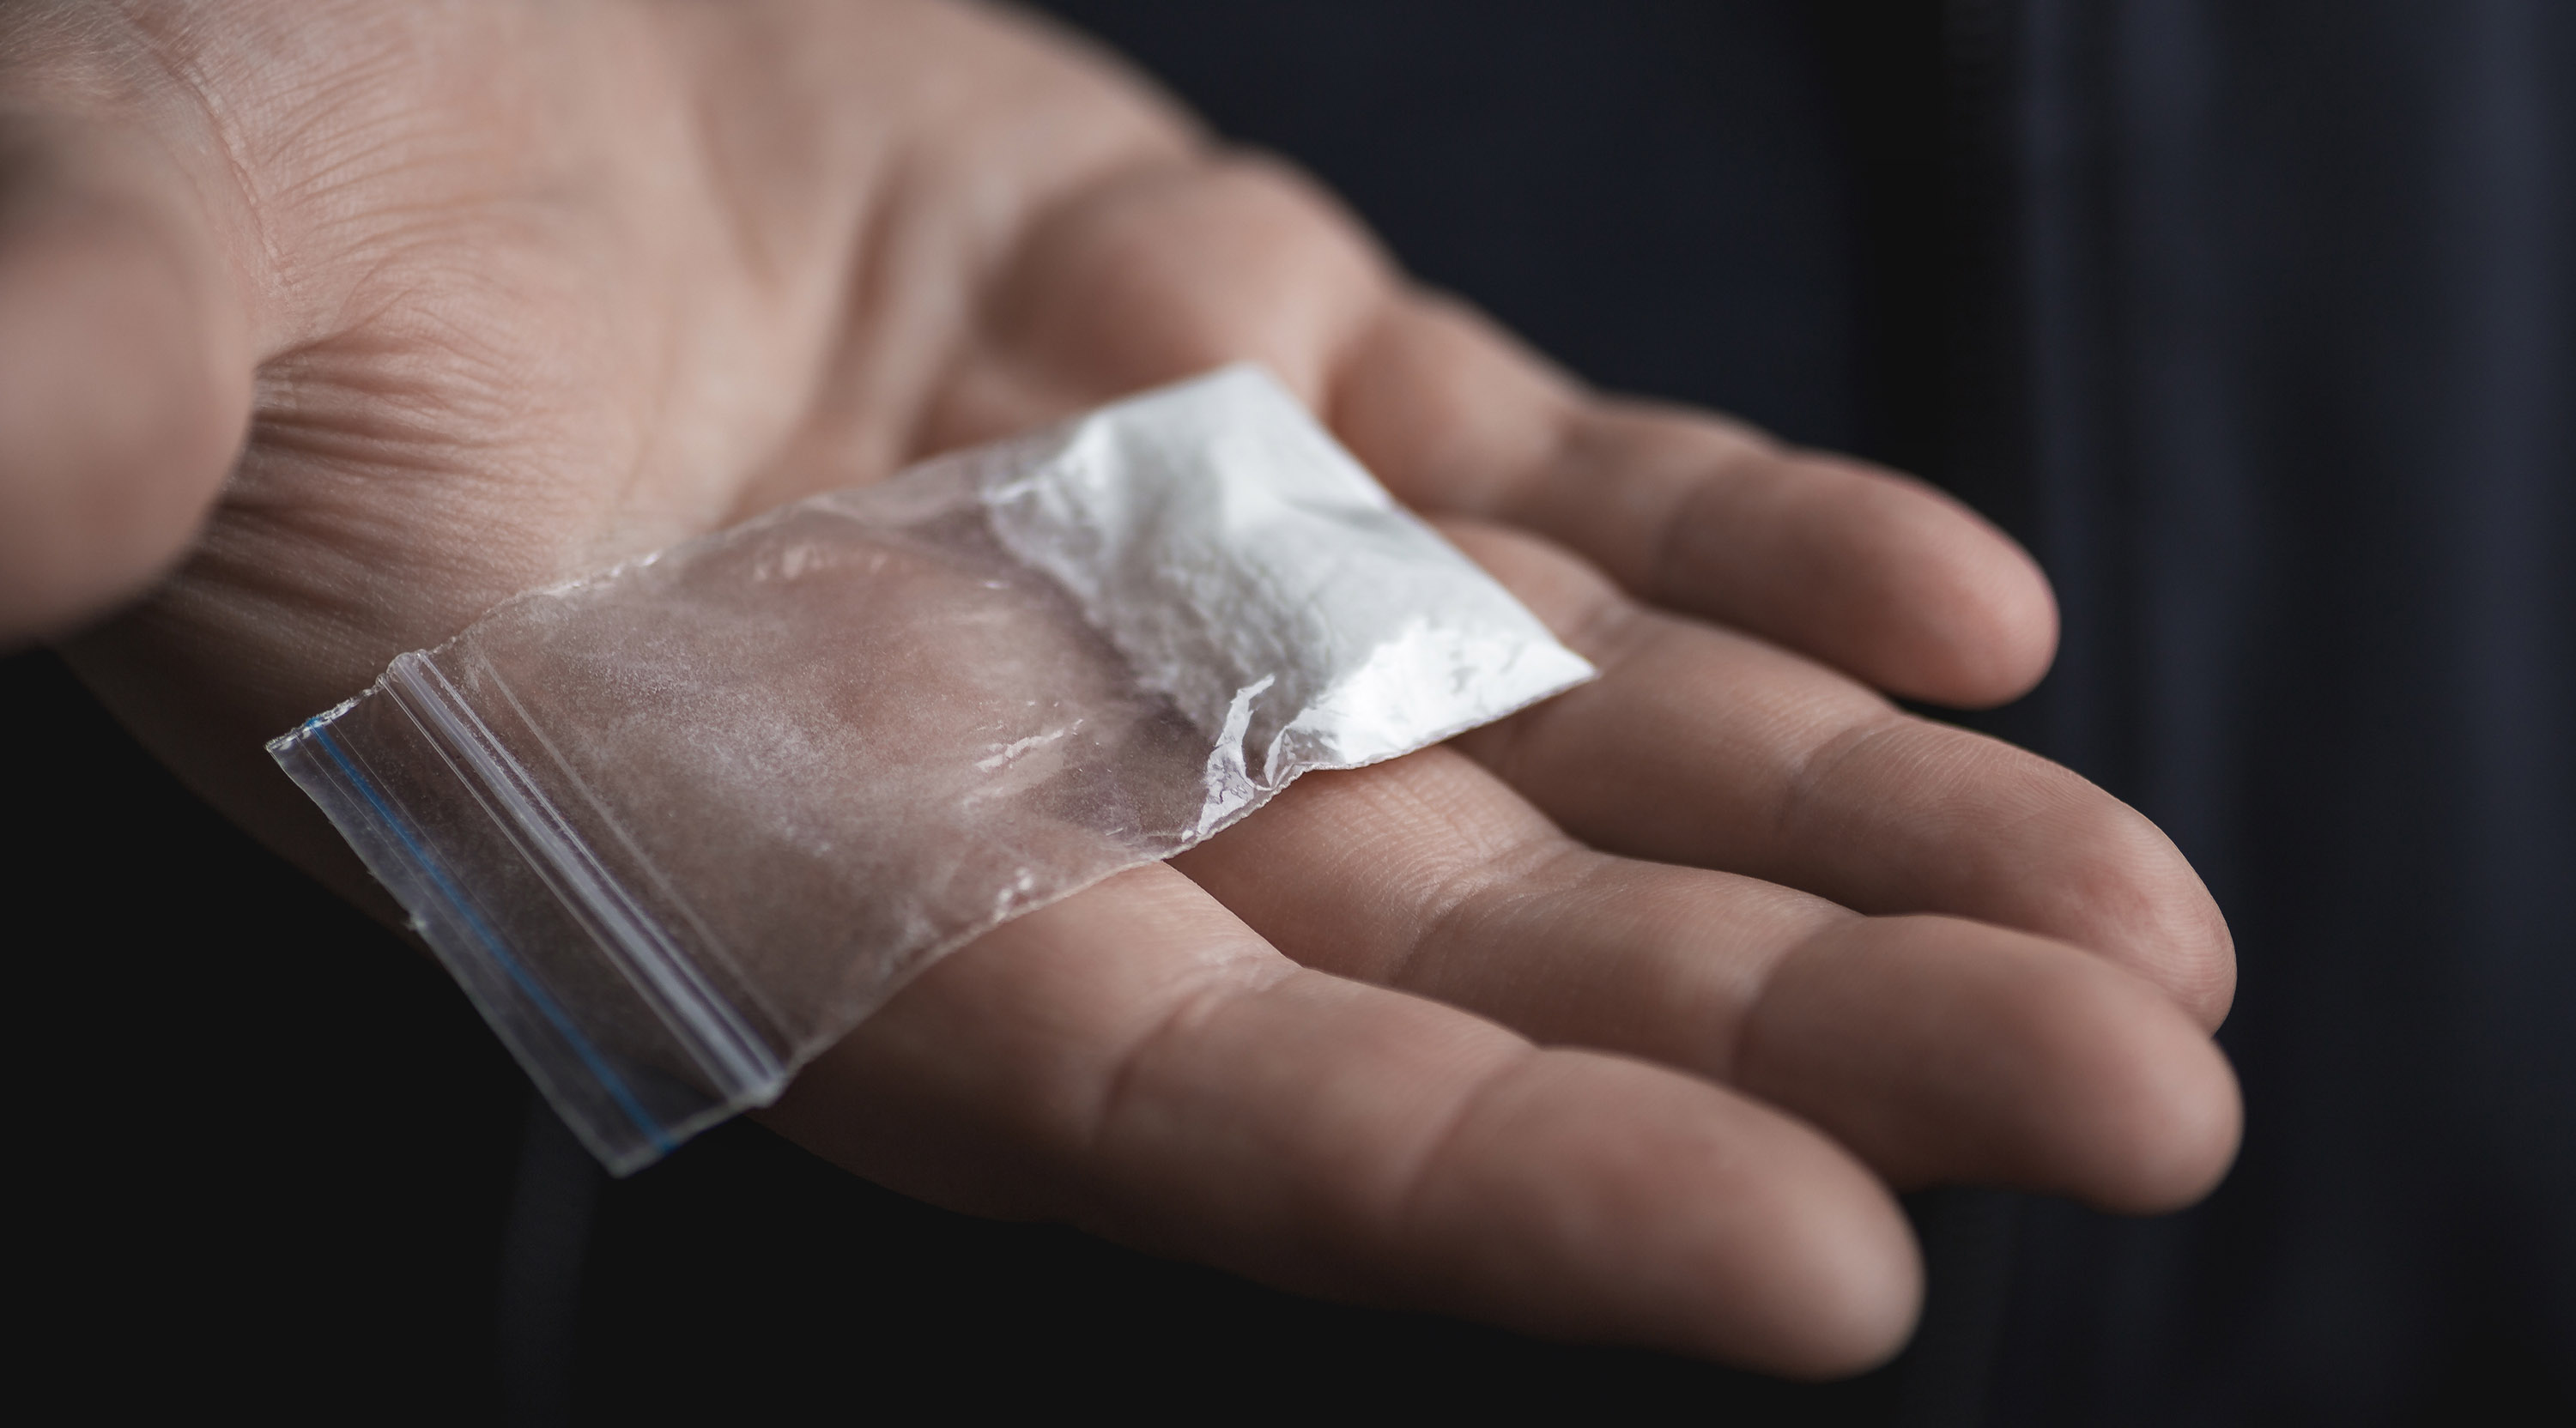 Beutel mit Kokainpulver auf Handfläche